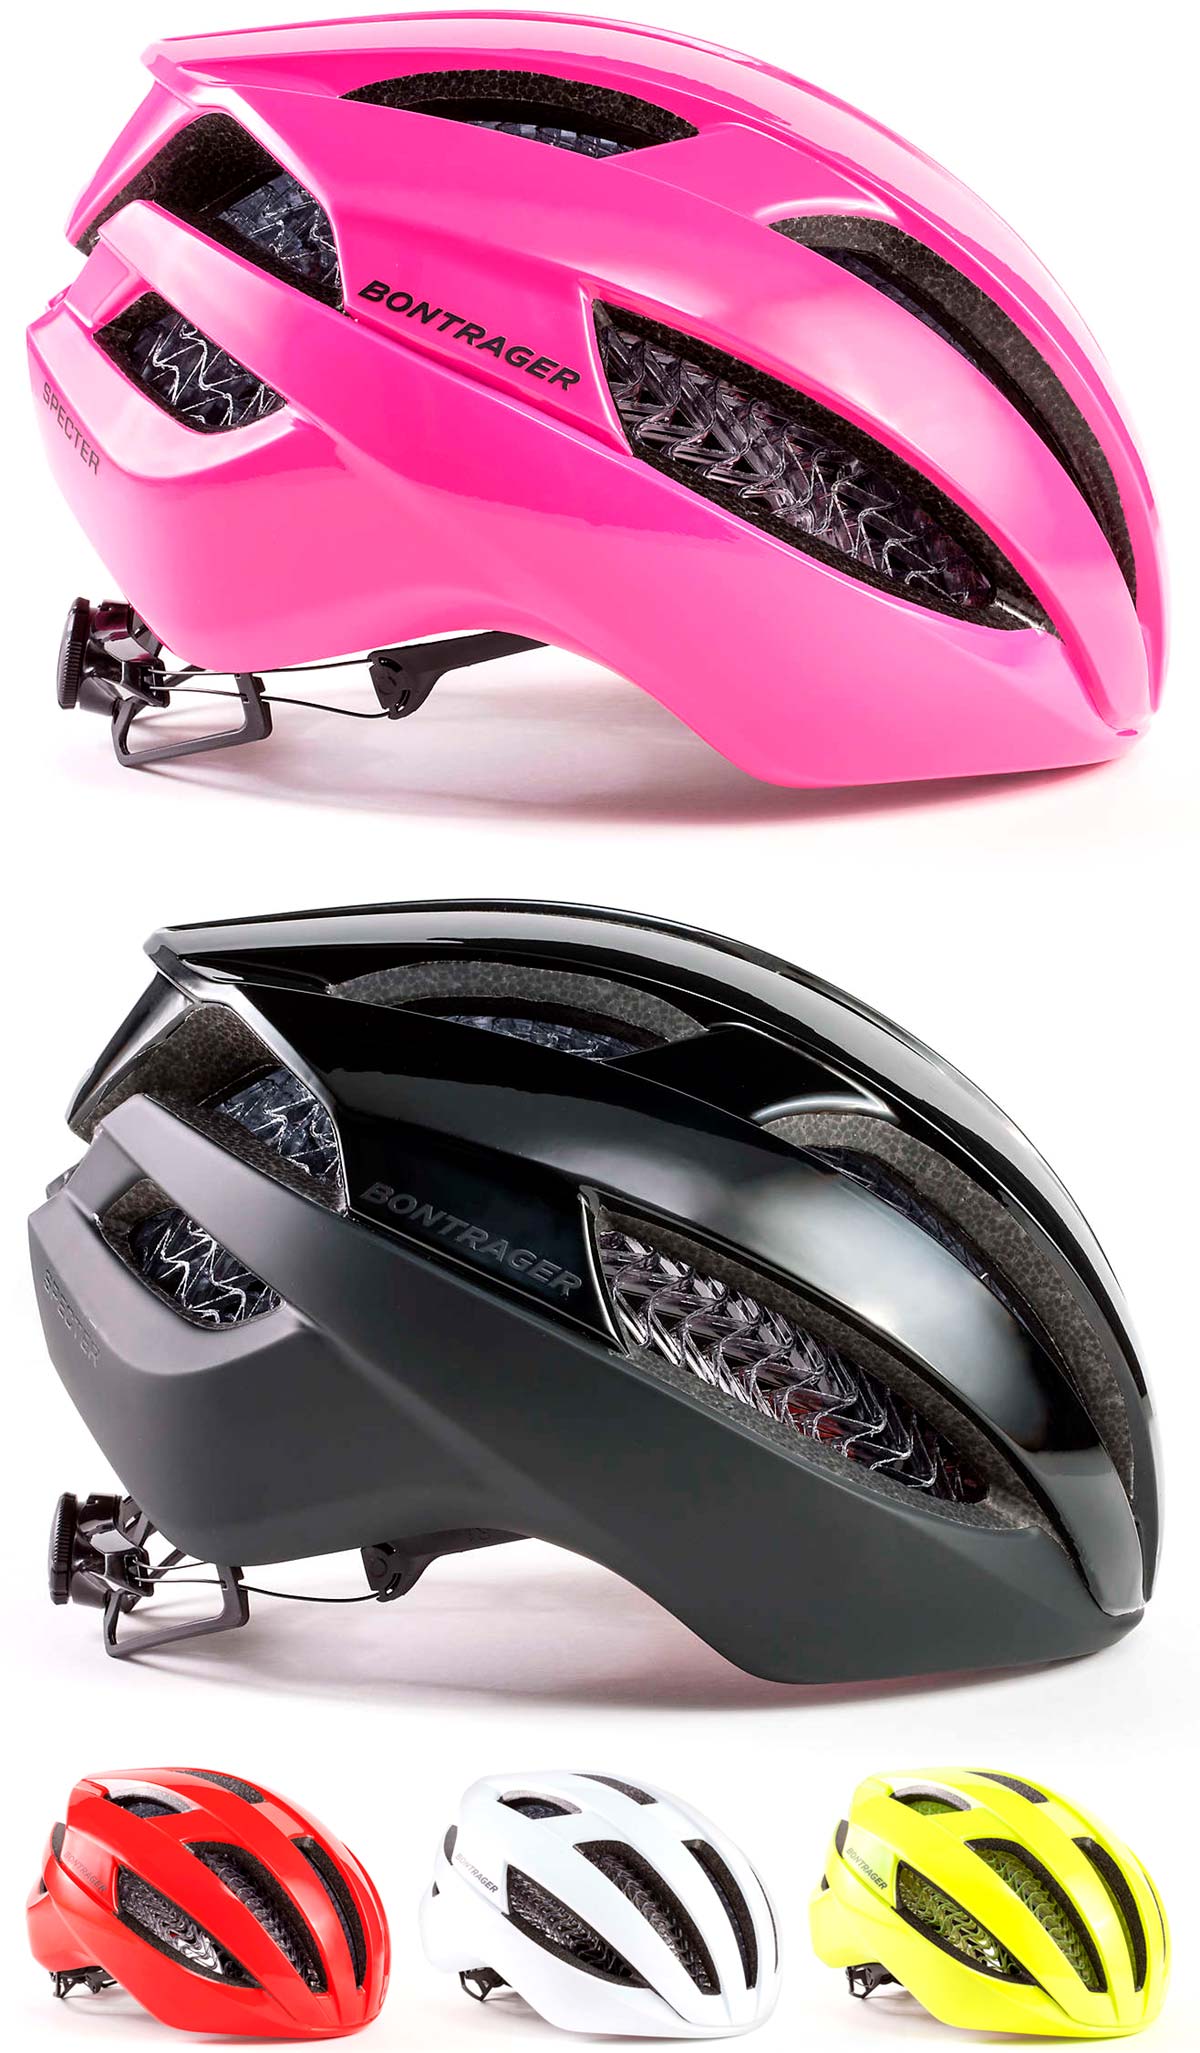 En TodoMountainBike: Bontrager Specter, el casco con tecnología WaveCel más versátil de la marca